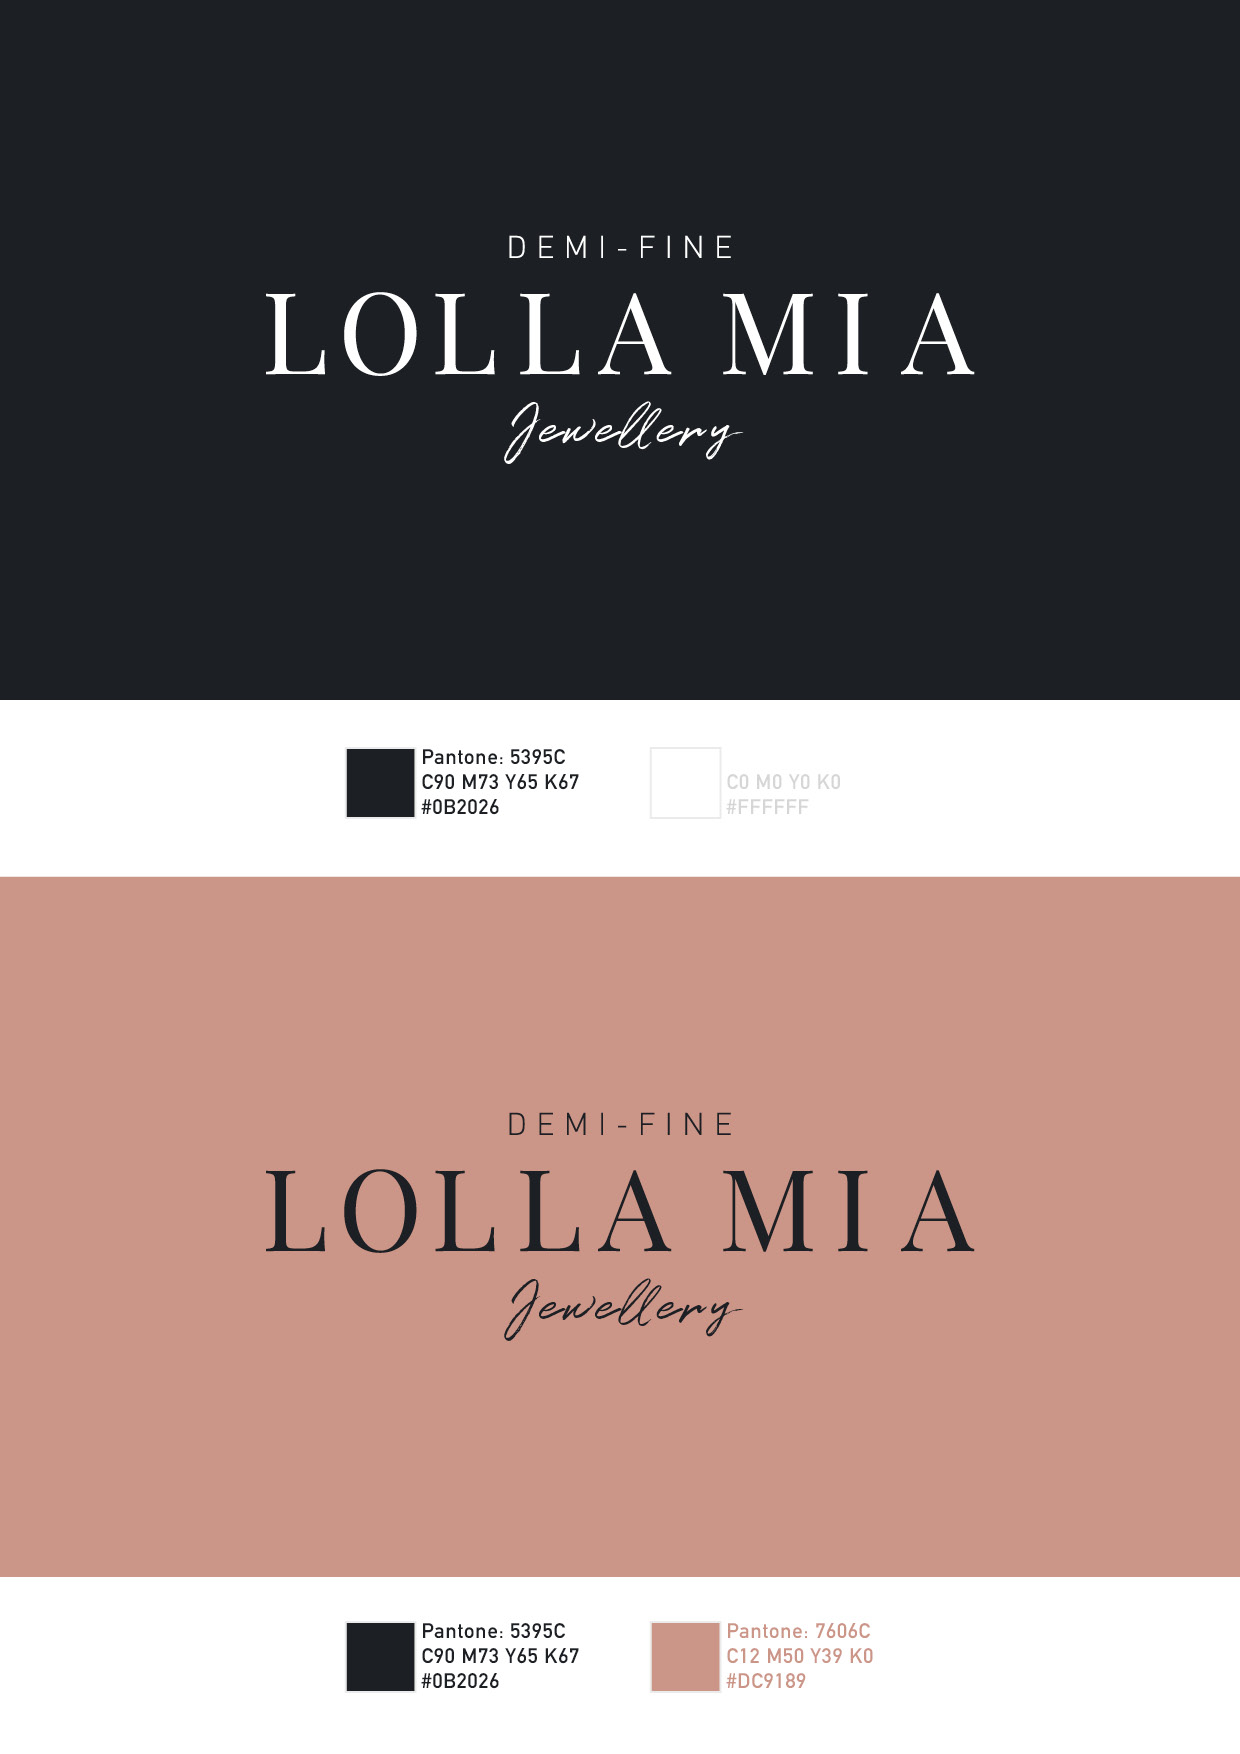 Lolla Mia Logo/Brand Creation | Final Logos